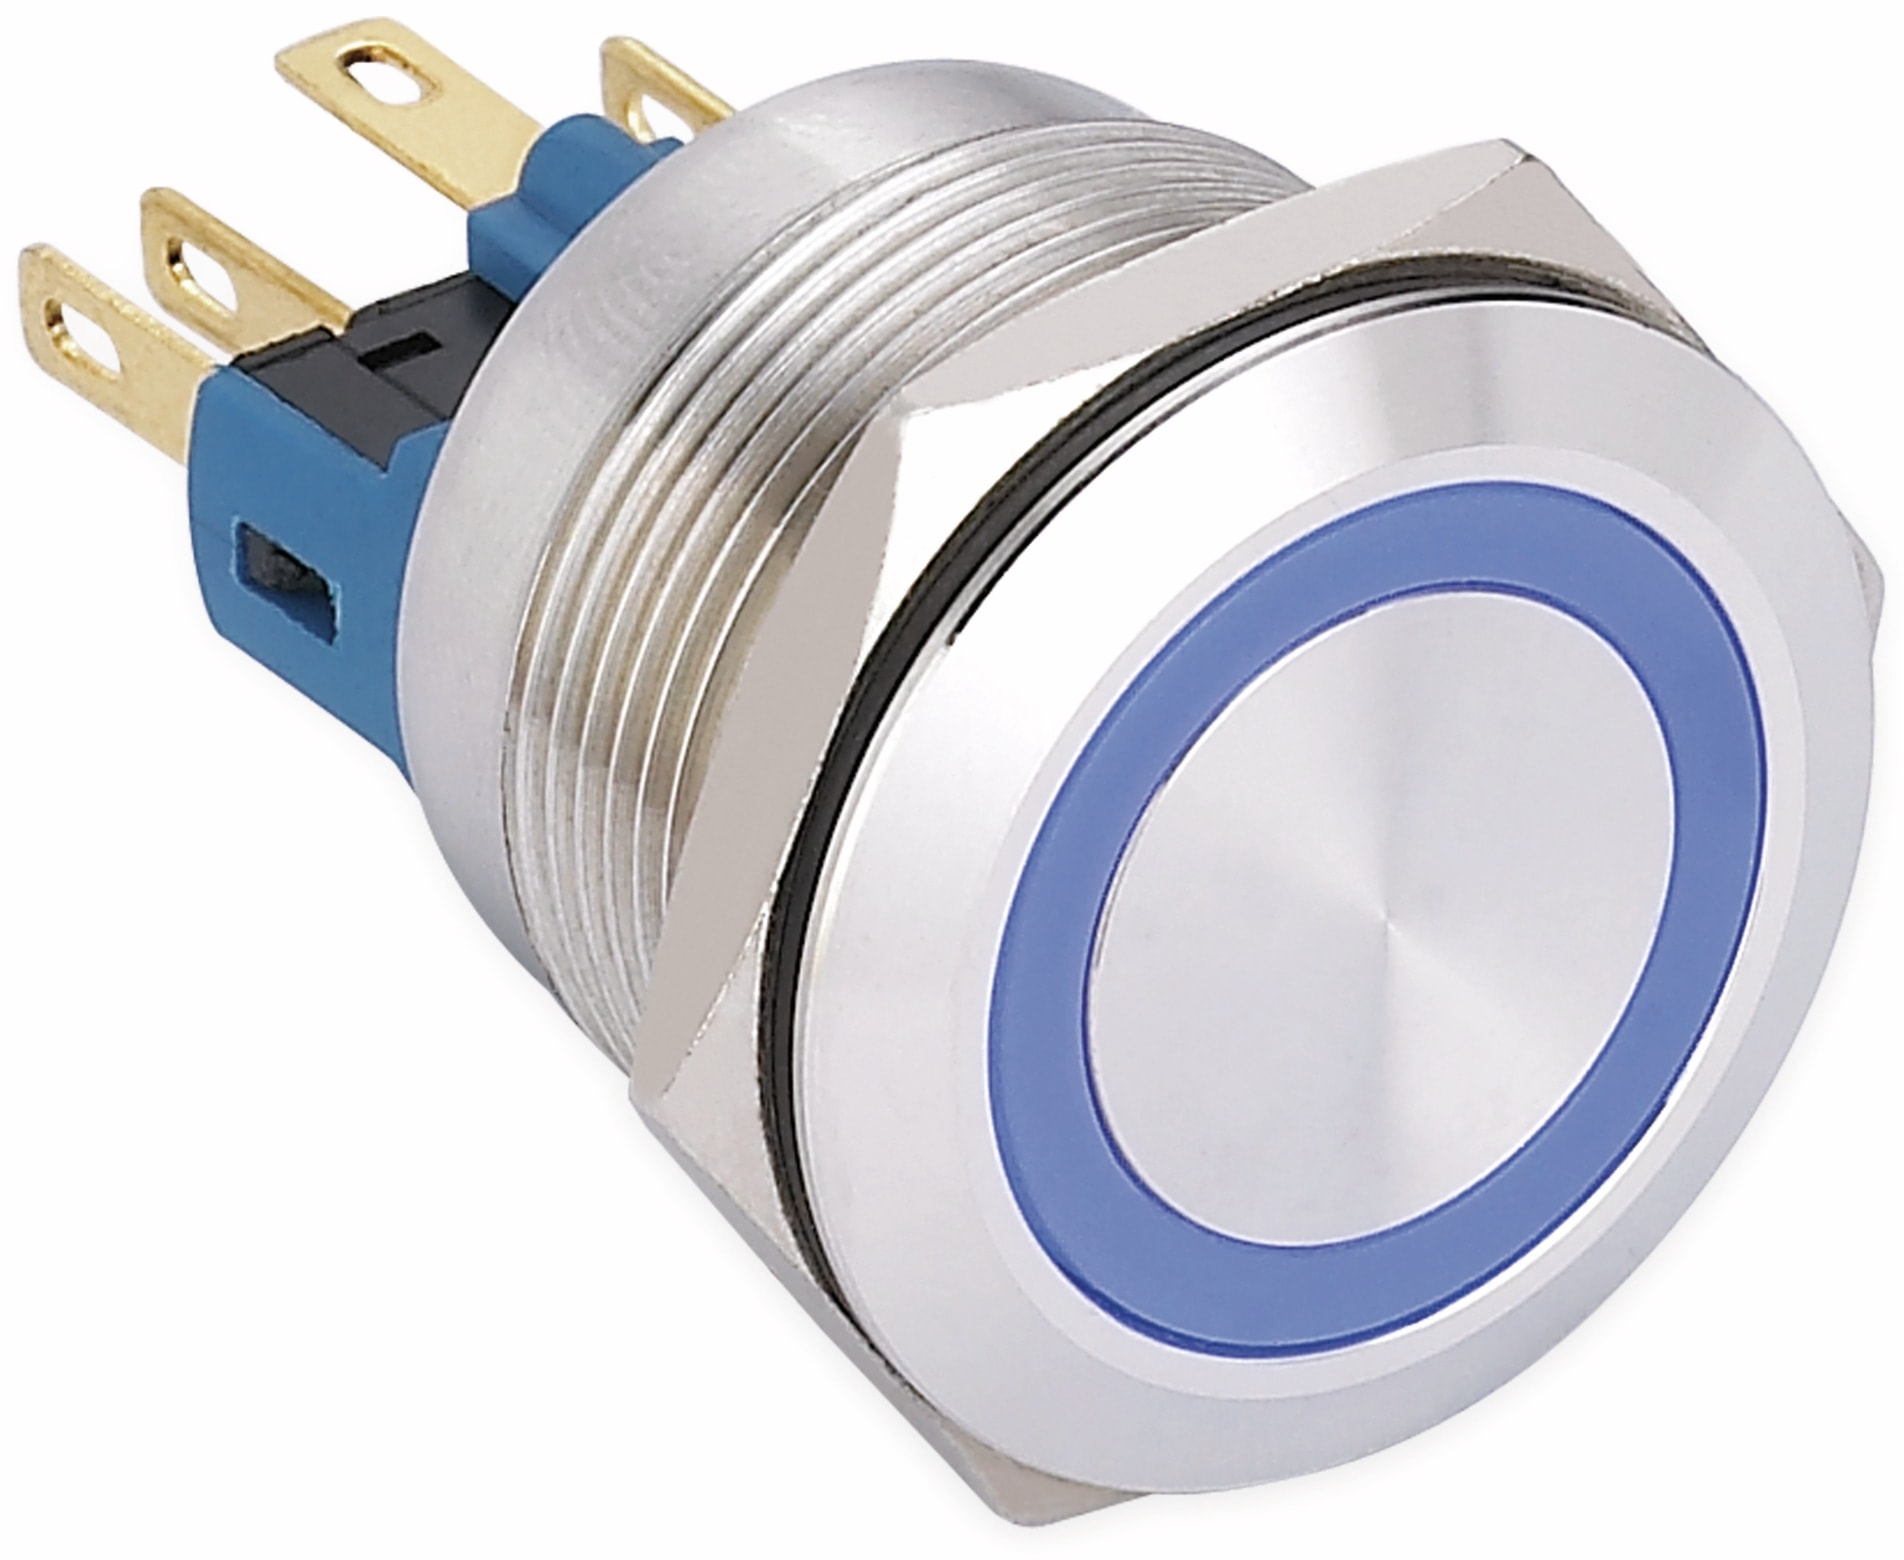 ONPOW Schalter, 24 V/DC, 1x Off/(On), Beleuchtung blau, Lötanschluss, flach rund, Edelstahl, 22 mm